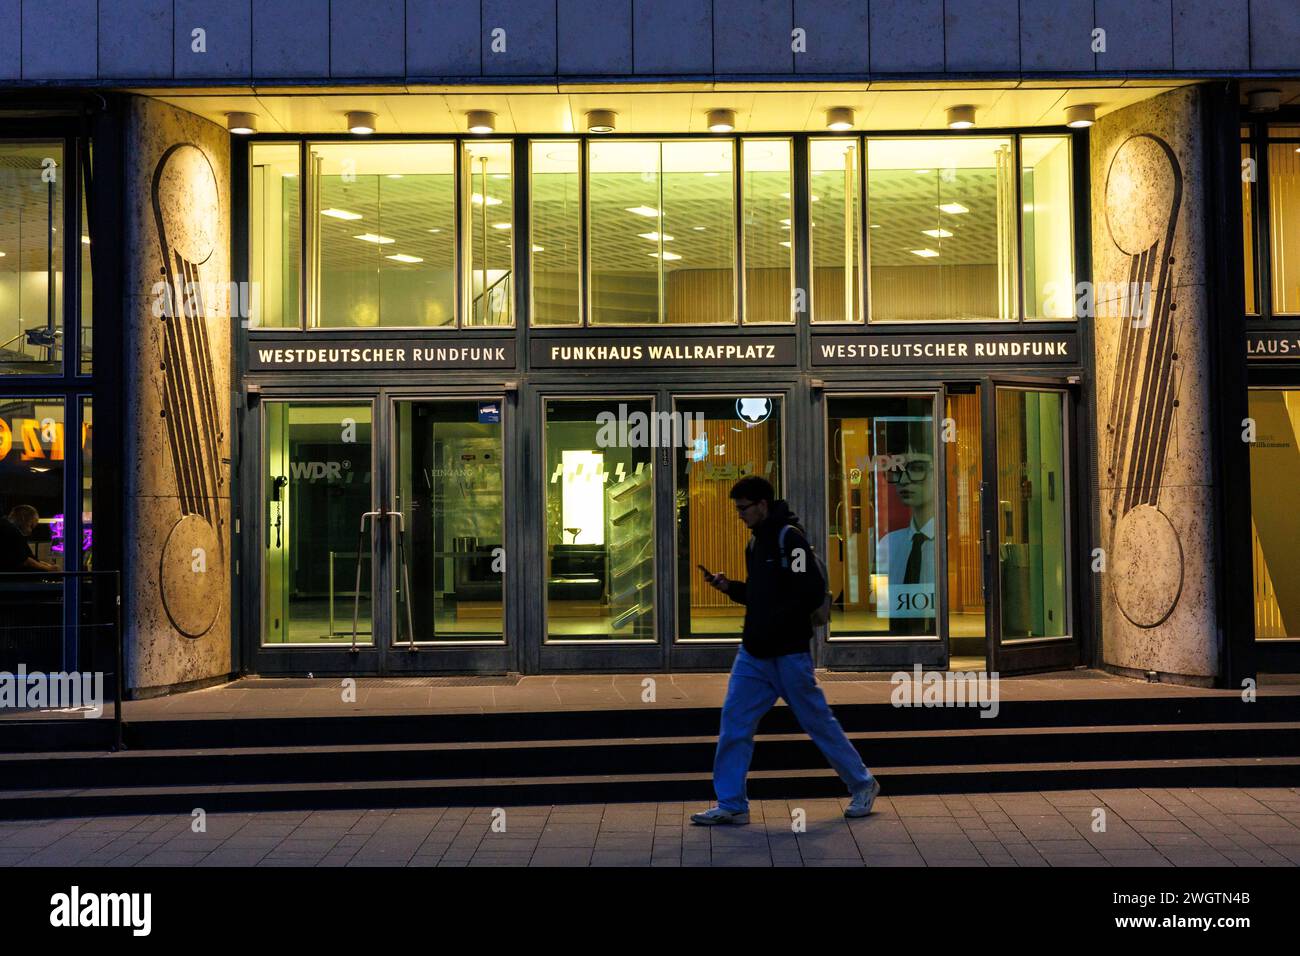 Entrée du Funkhaus sur la place Wallraf, West German Broadcasting, Cologne, Allemagne. Eingang zum Funkhaus am Wallrafplatz, Westdeuscher Run Banque D'Images